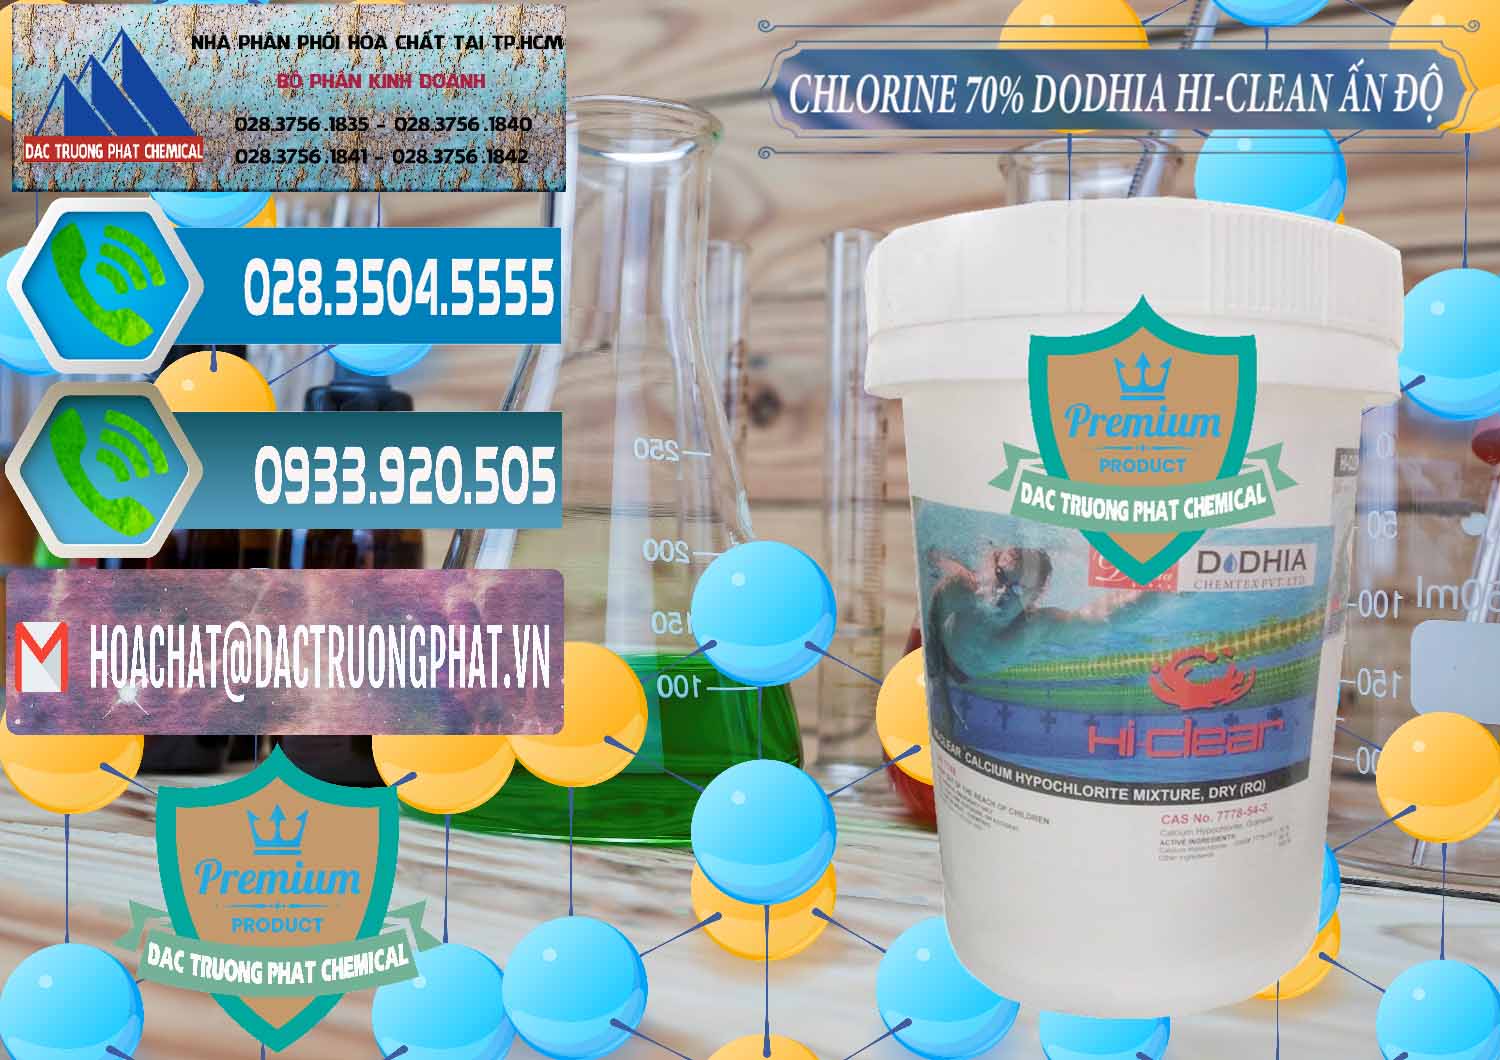 Đơn vị cung cấp và bán Chlorine – Clorin 70% Dodhia Hi-Clean Ấn Độ India - 0214 - Đơn vị chuyên cung cấp & bán hóa chất tại TP.HCM - congtyhoachat.net